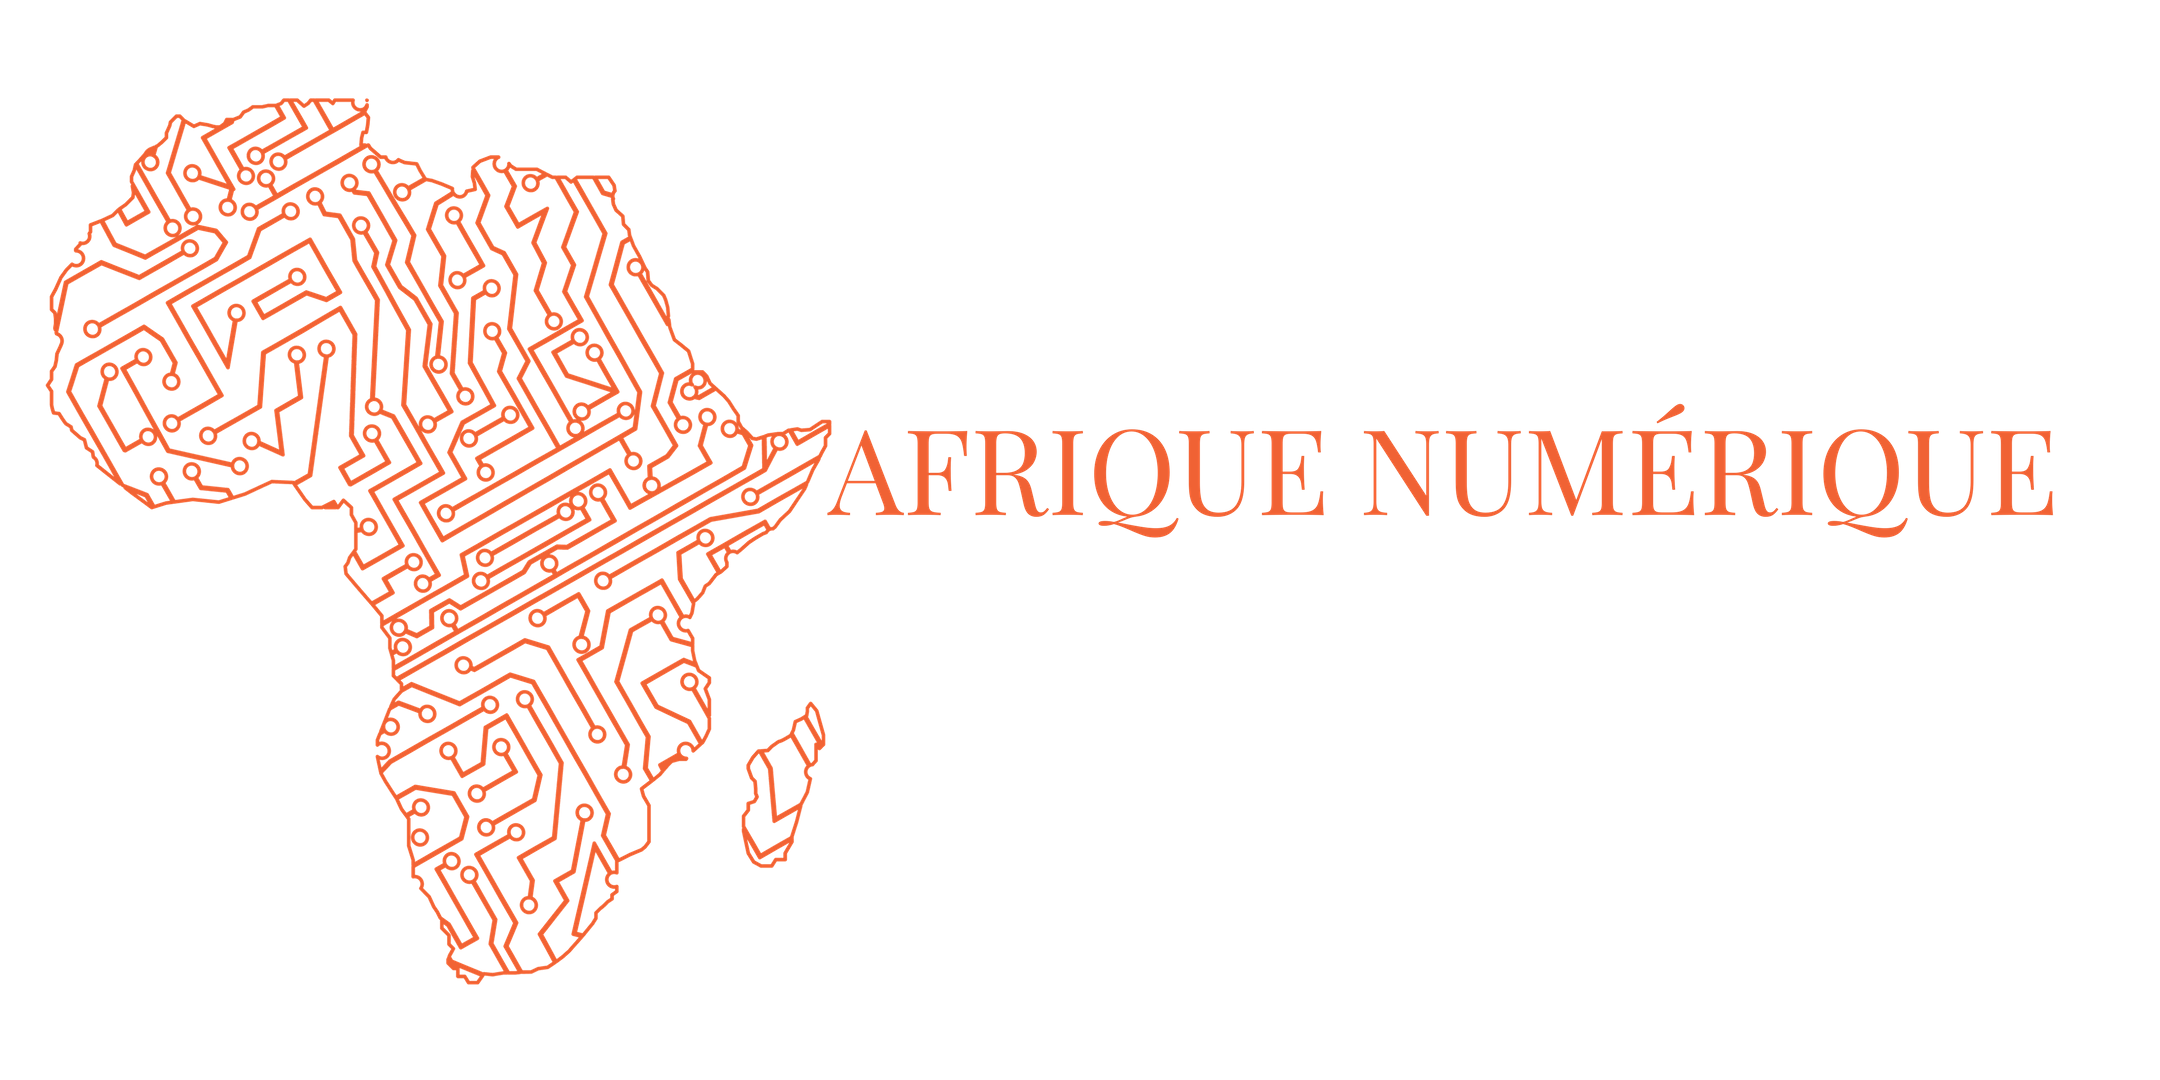 Afrique numerique